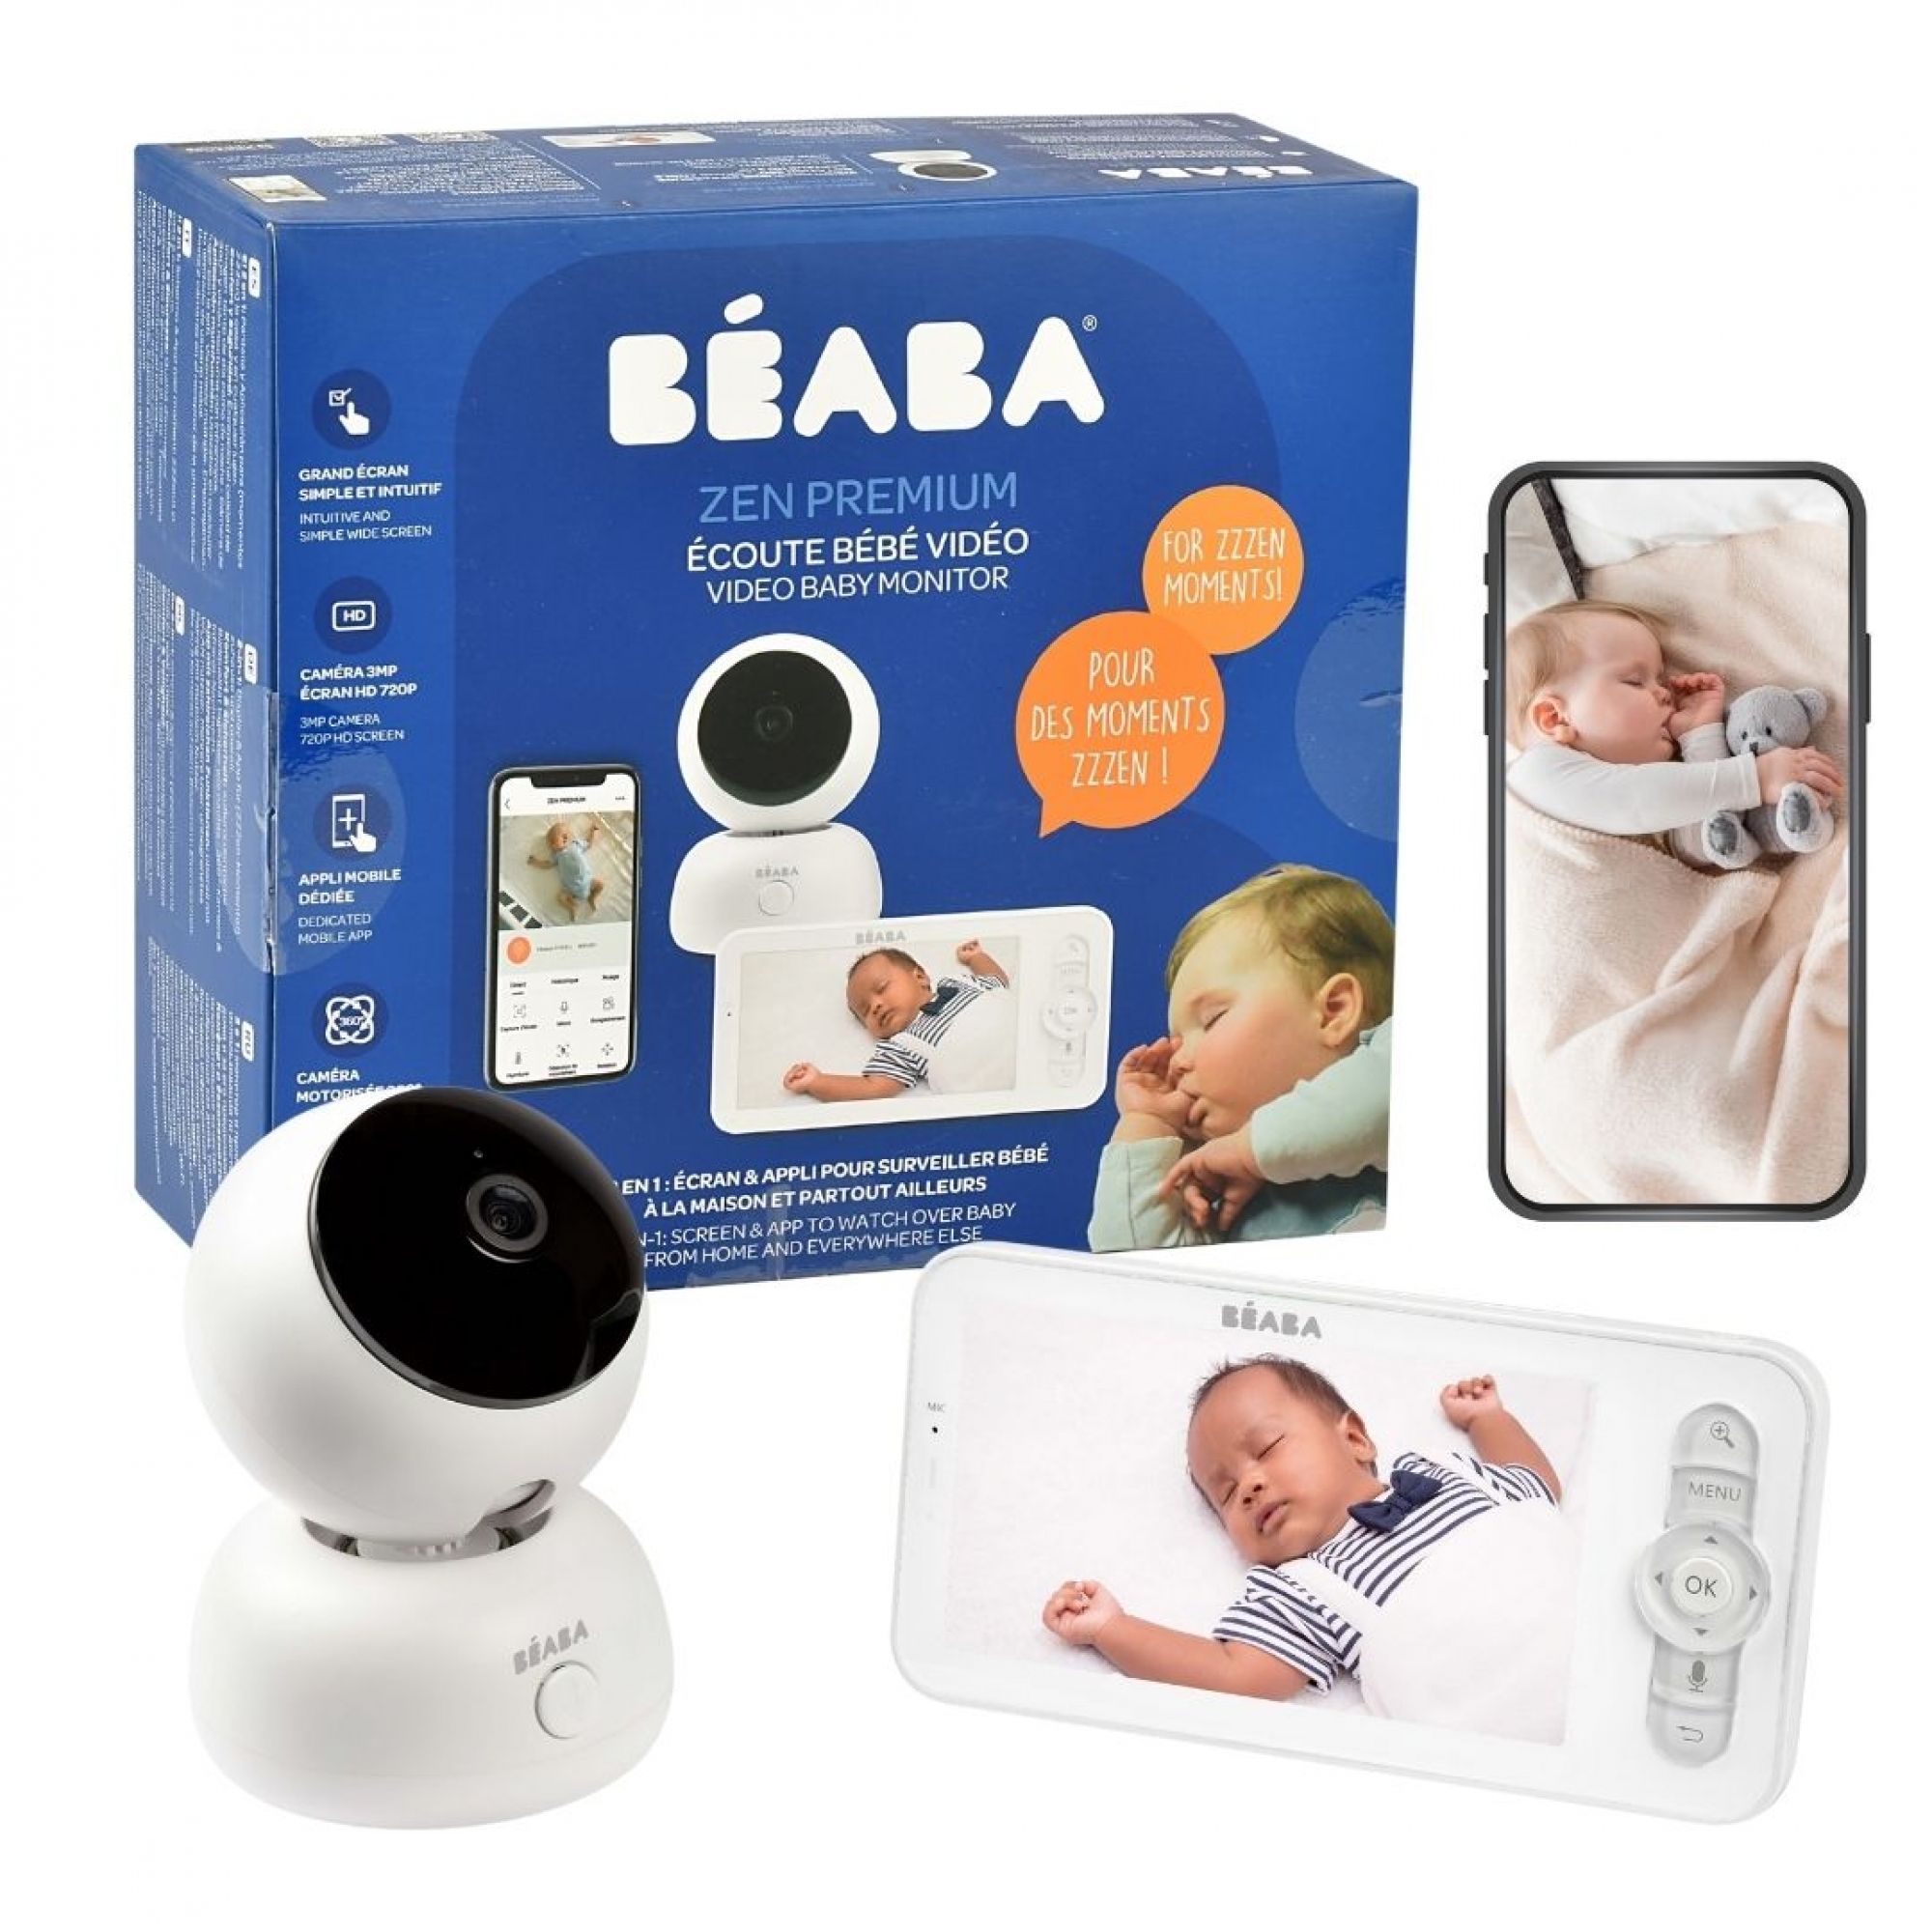 BÉABA Ecoute-bébé Vidéo Zen Premium - White - Écoute bébé BÉABA sur  L'Armoire de Bébé